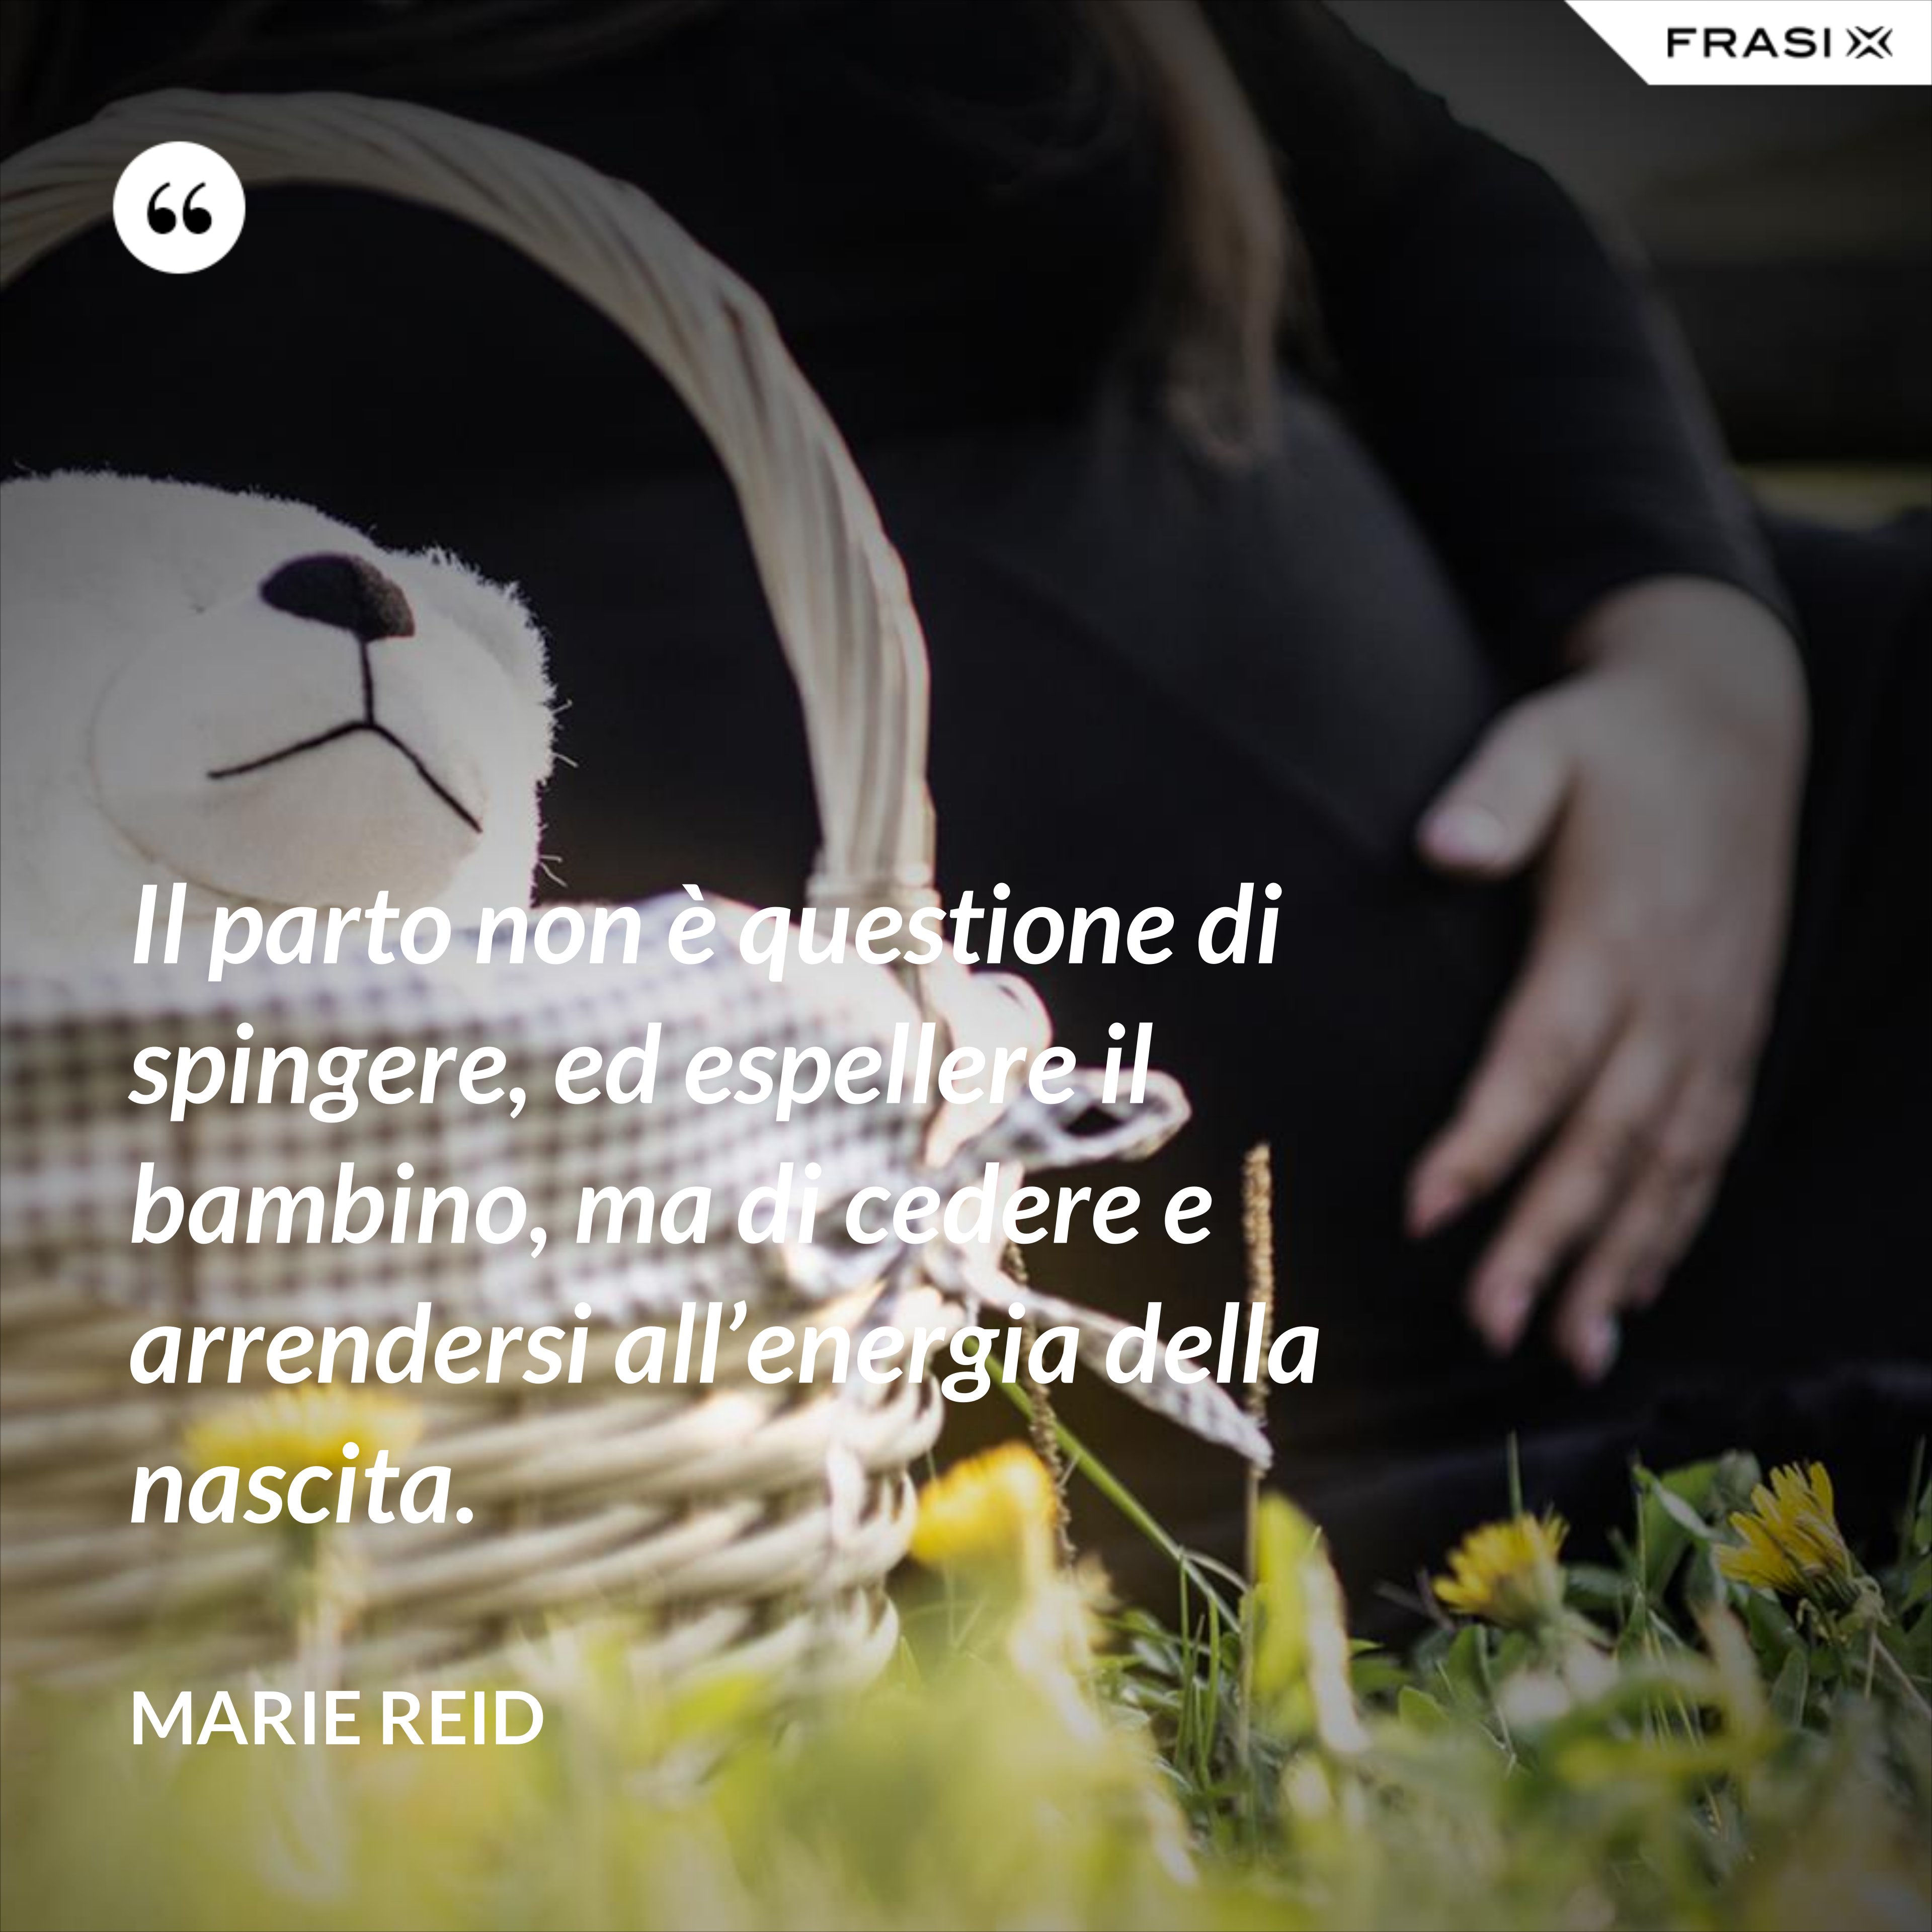 Il parto non è questione di spingere, ed espellere il bambino, ma di cedere e arrendersi all’energia della nascita. - Marie Reid